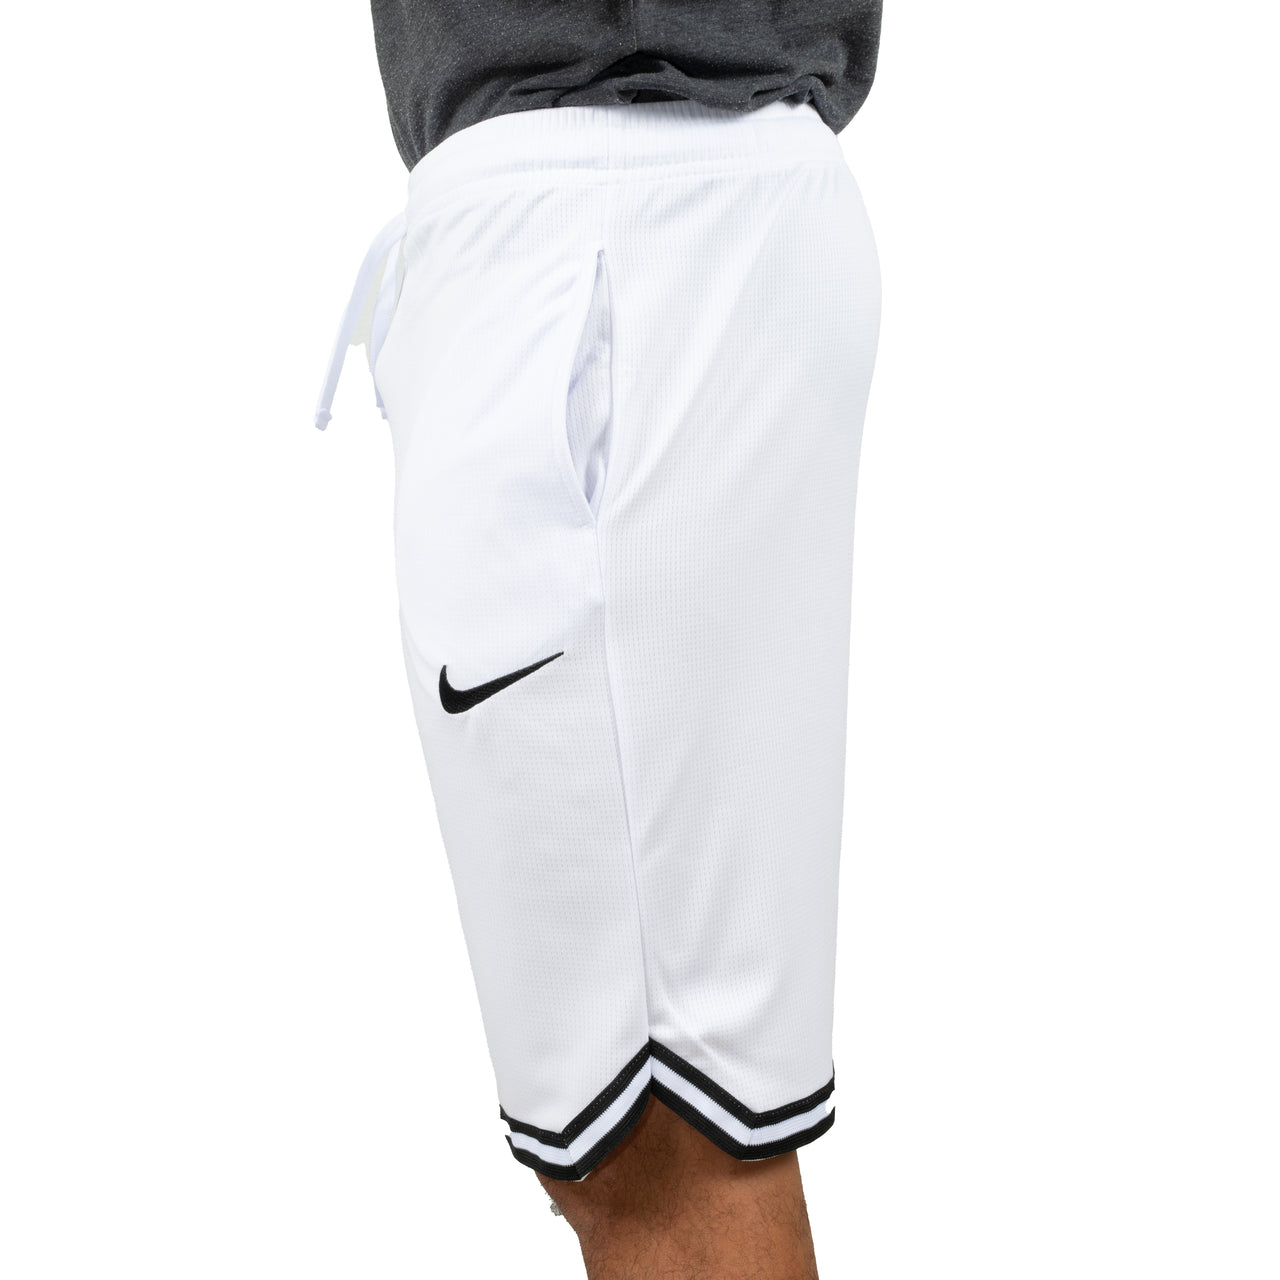 Basketball-Dry-Fit-Shorts für Herren in Weiß